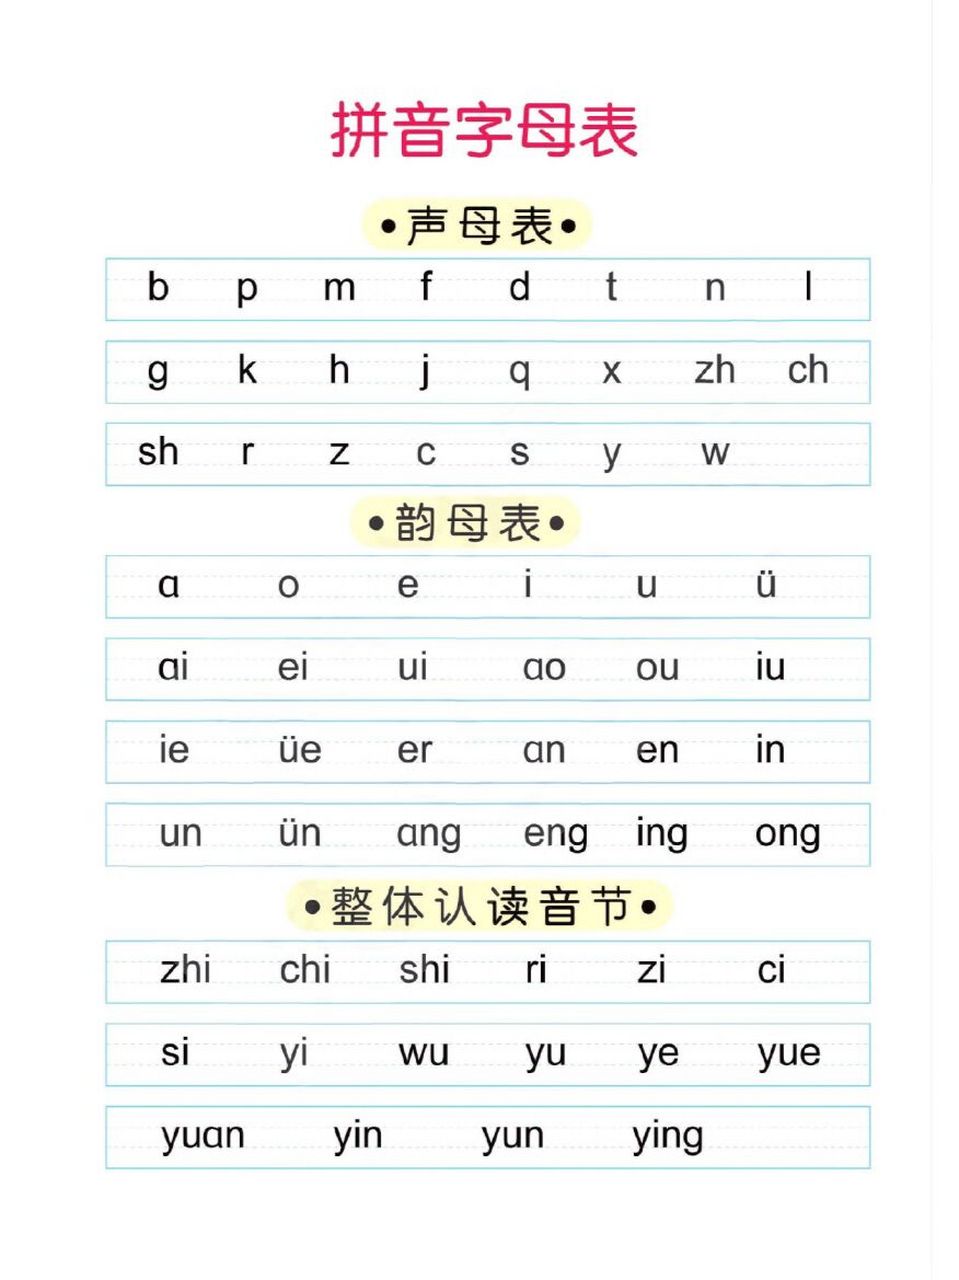 26个汉语拼音字母 正确图片